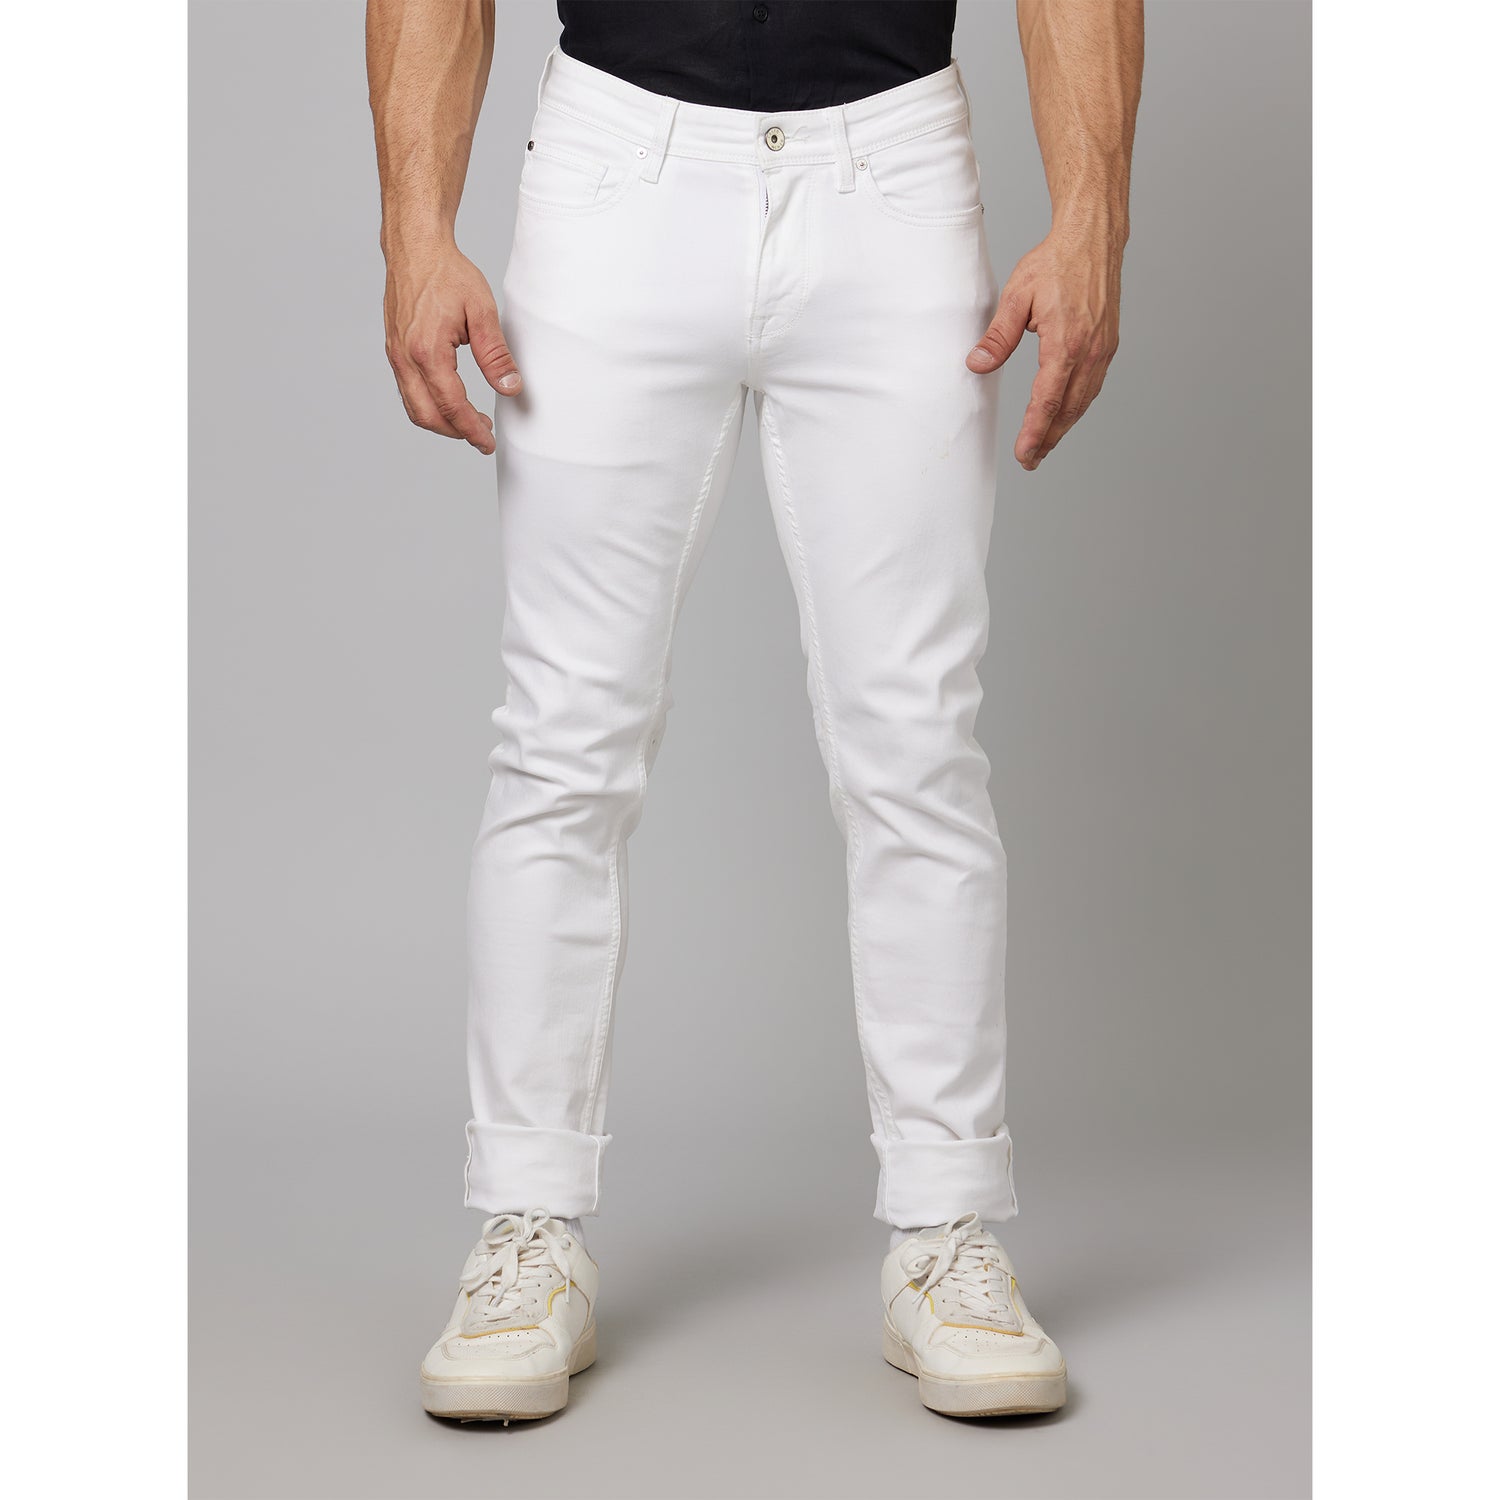 White Cotton Stay Denim Jeans (ANOWHITEIN25)